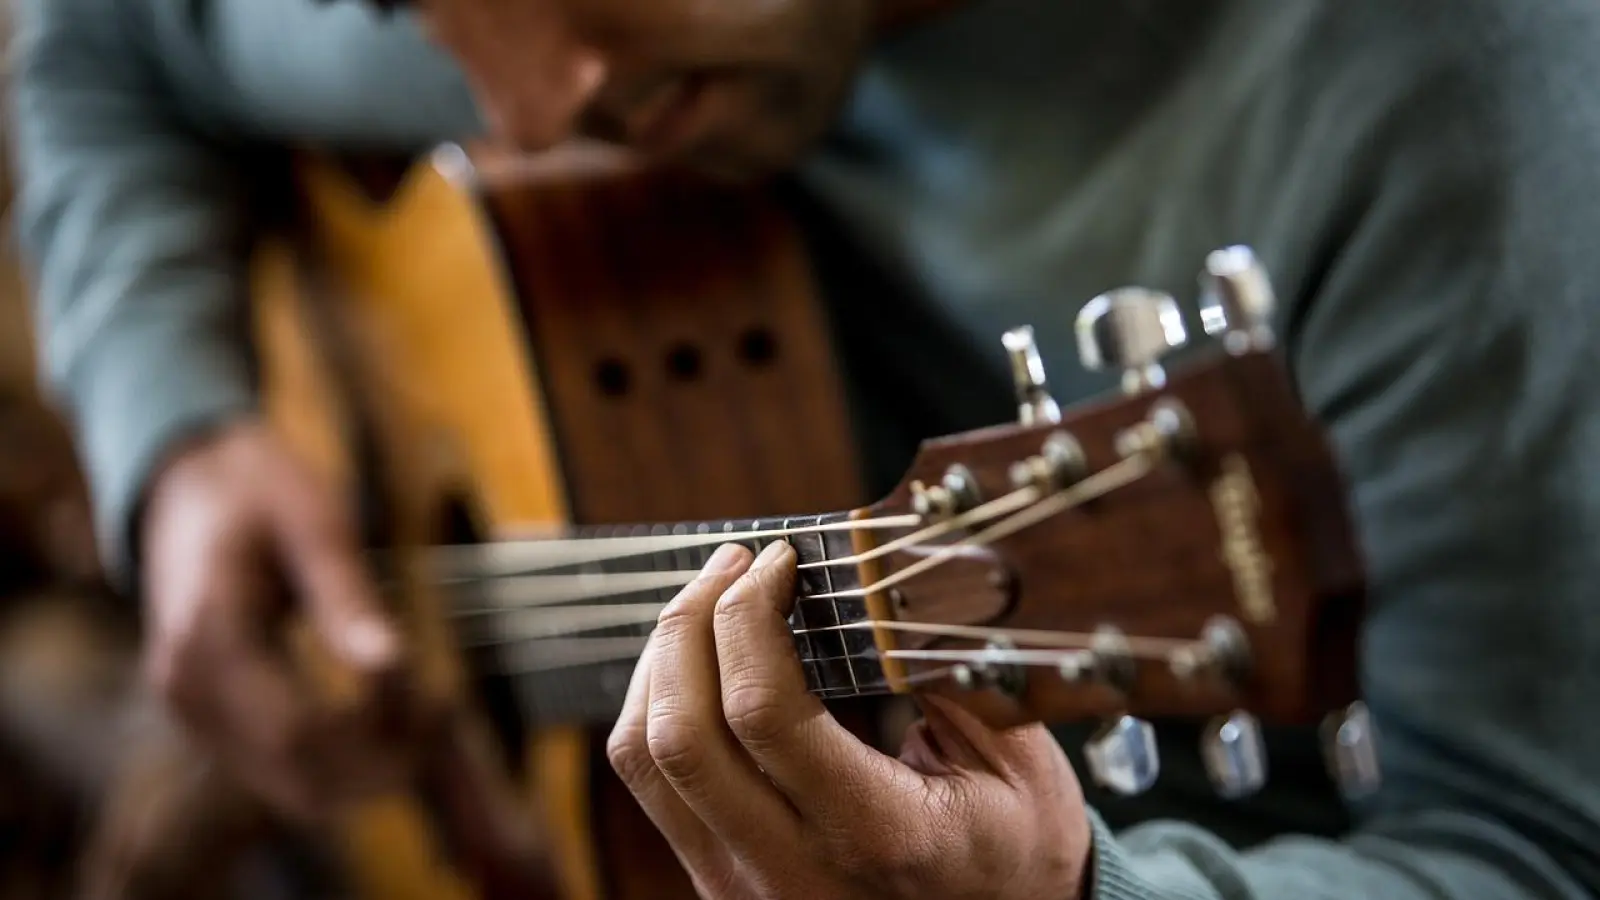 Der gemeinnützige Verein „Jelgi – Jeder lernt Gitarre“ veranstaltet in der RW21 Stadtbibliothek einen Gitarrenkurs.  (Foto: Pixabay)